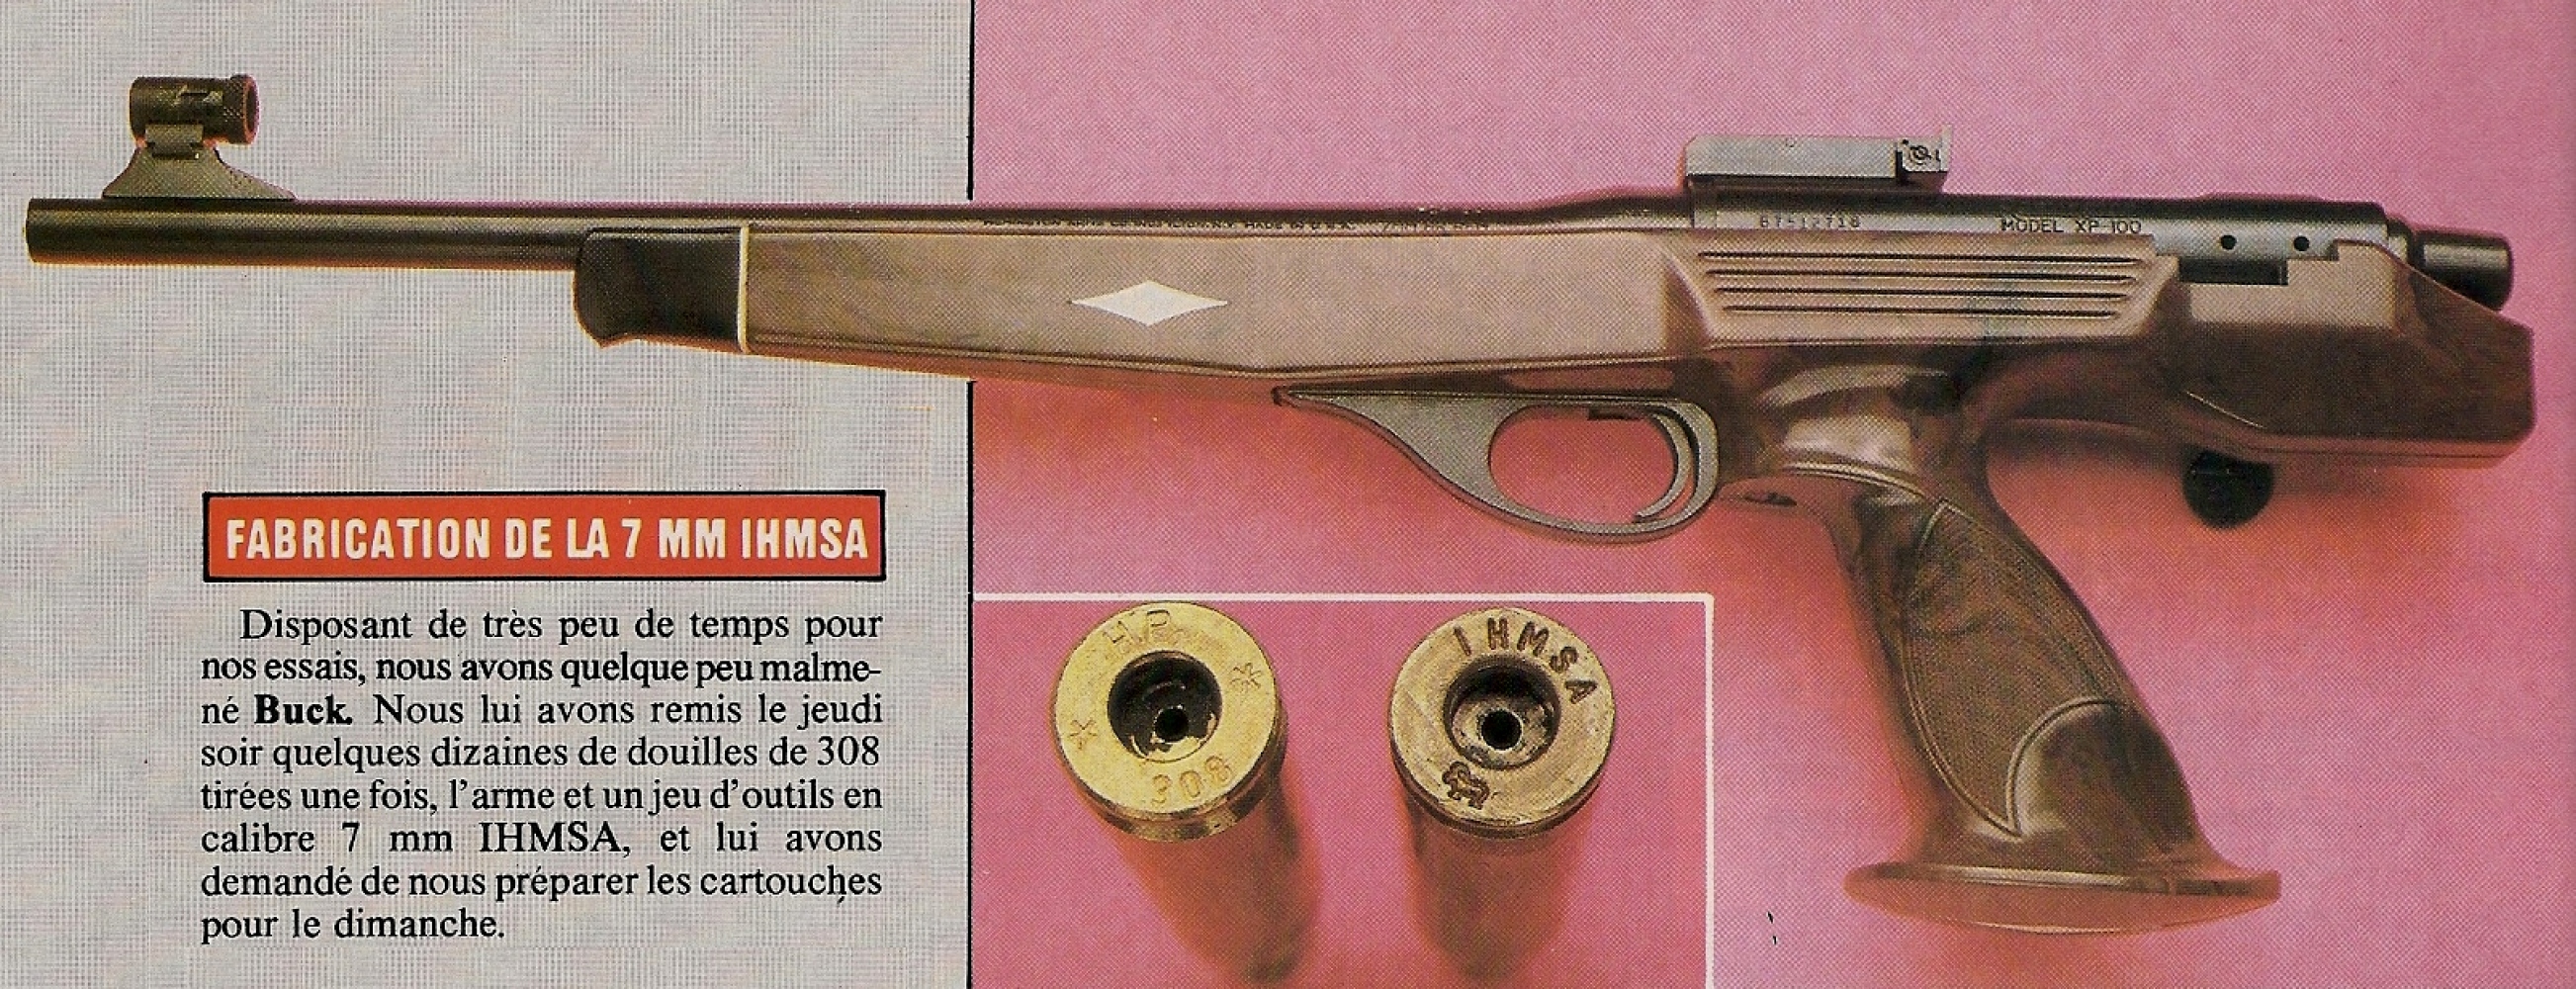 L'arme que nous testons a été rechambrée en calibre 7 mm IHMSA , un « Wildcat » élaboré à partir d'une douille de .308 Winchester.